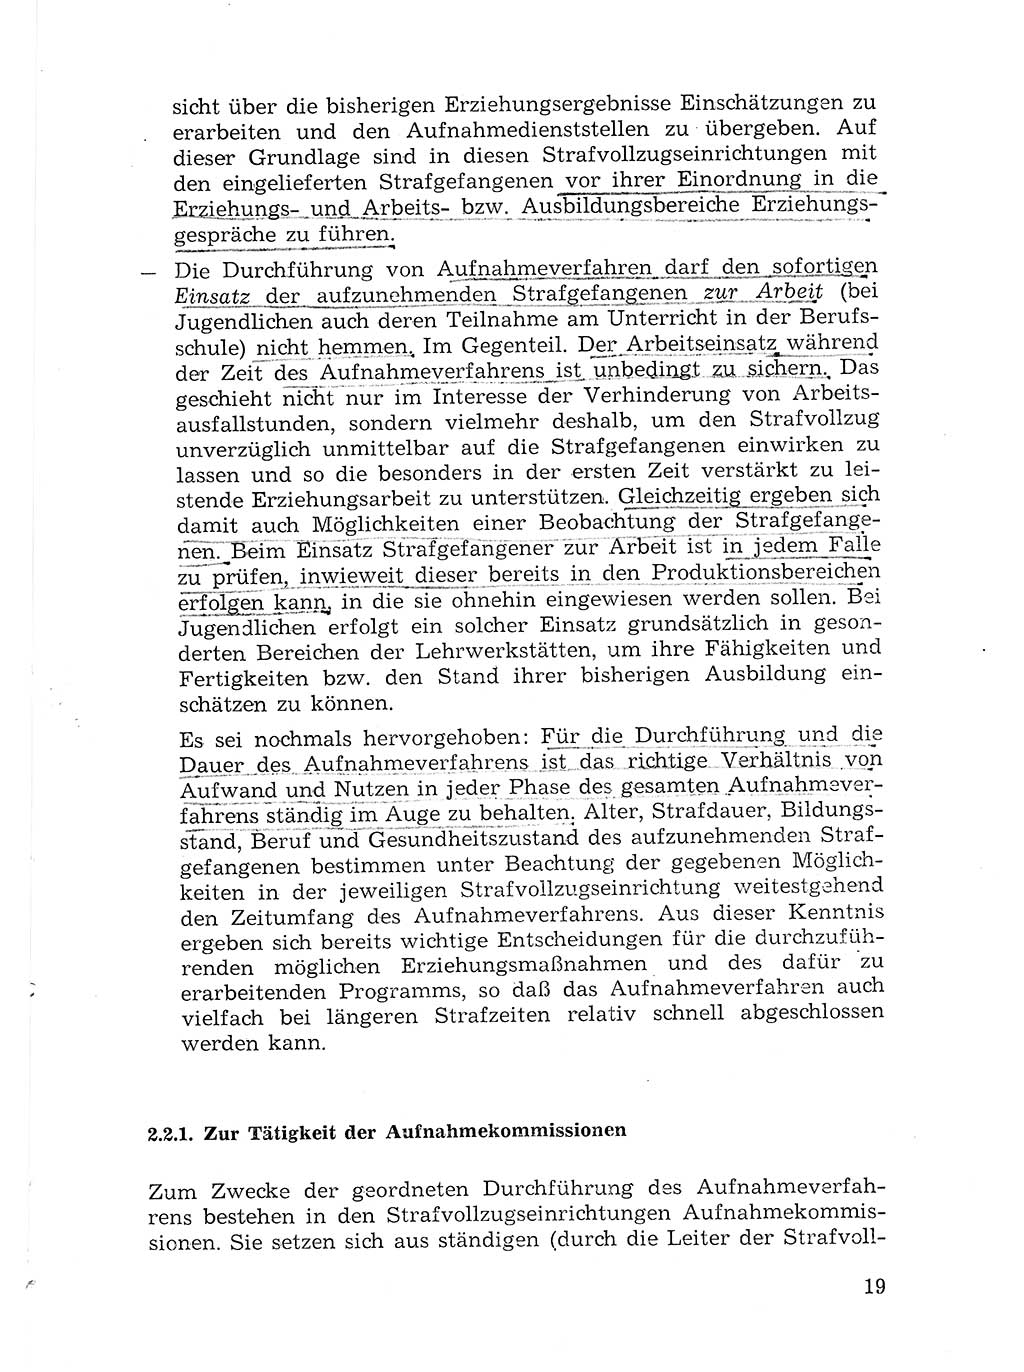 Sozialistischer Strafvollzug (SV) [Deutsche Demokratische Republik (DDR)] 1972, Seite 19 (Soz. SV DDR 1972, S. 19)